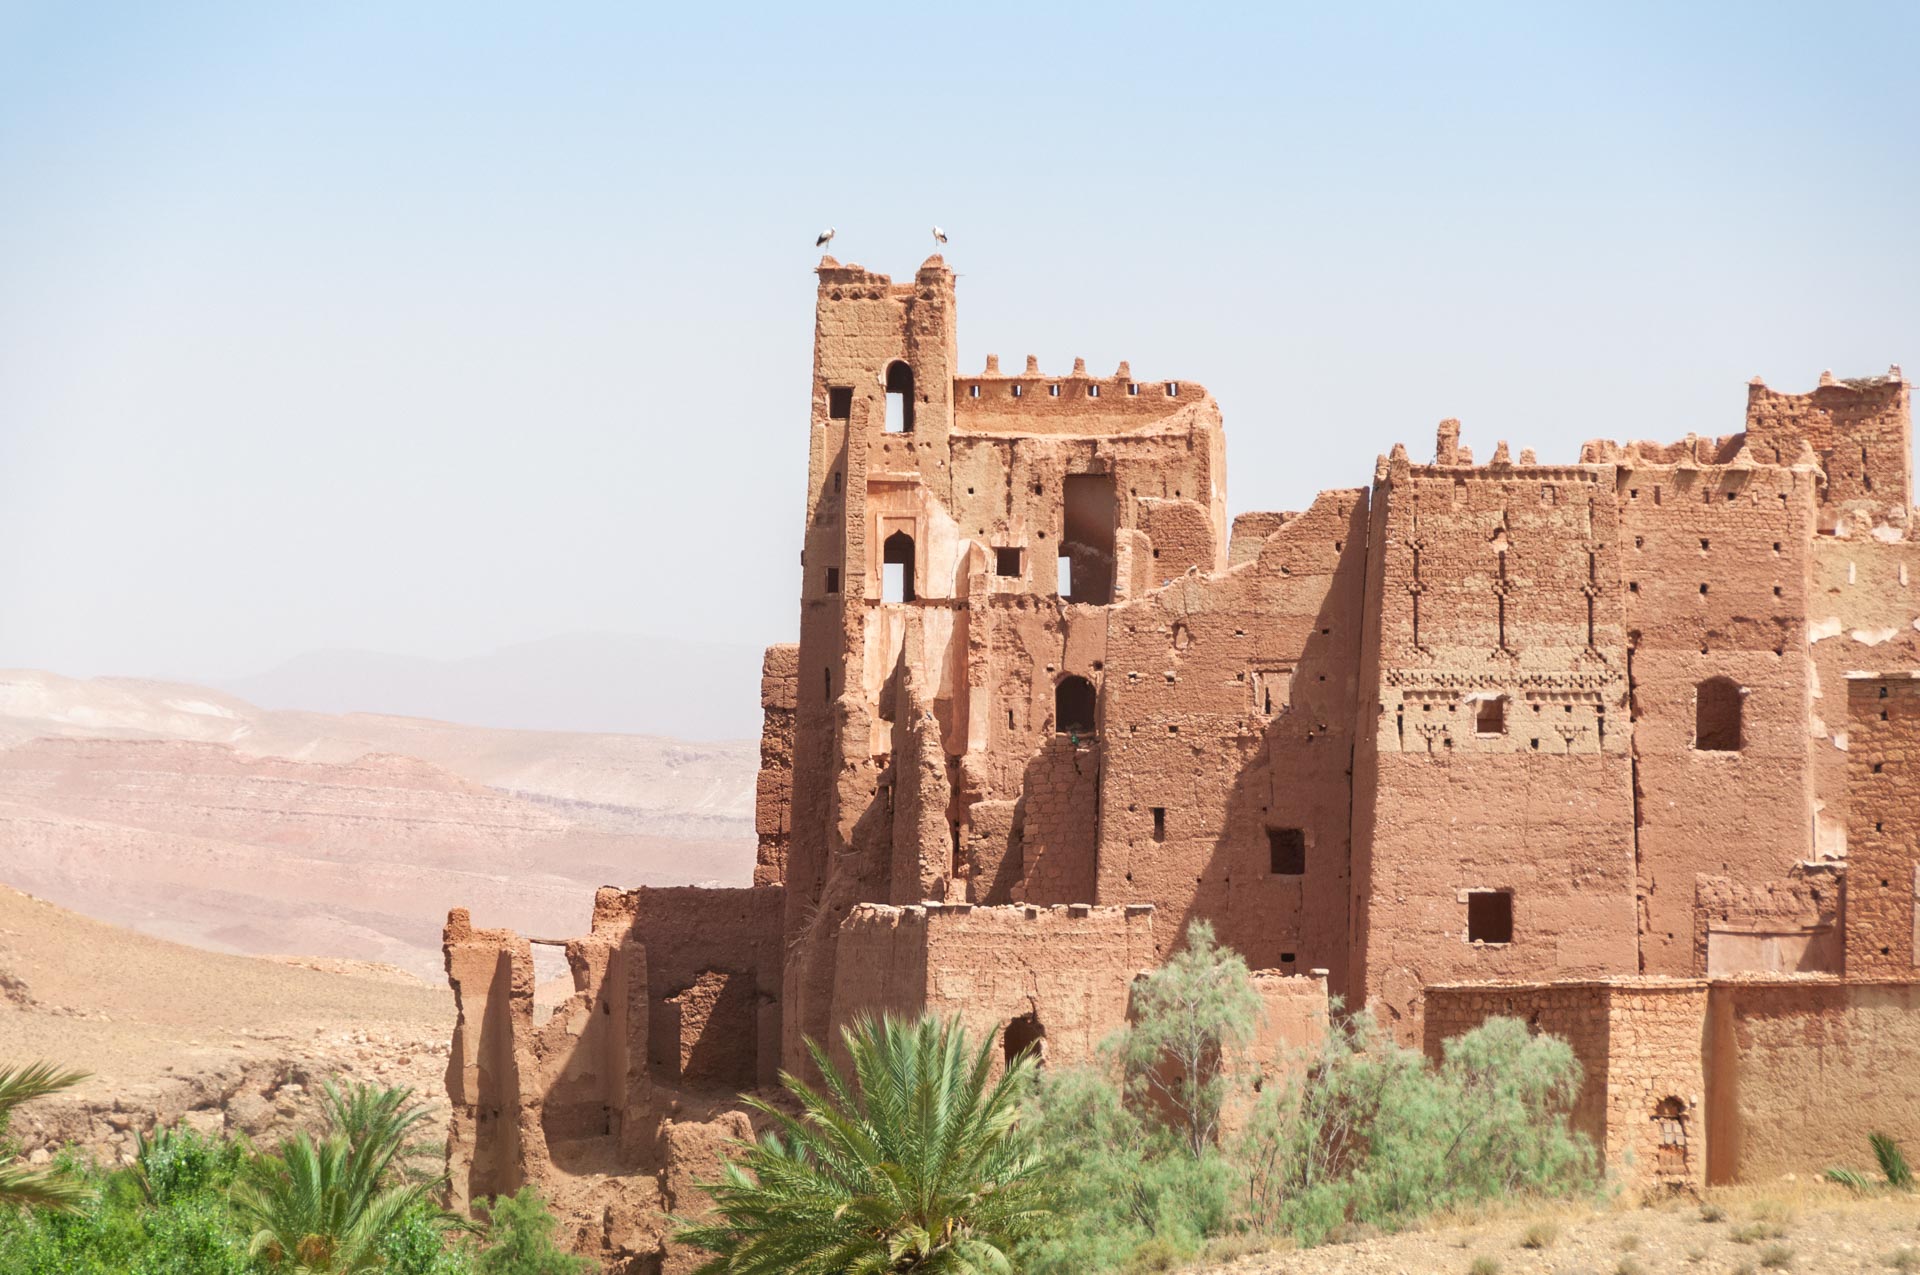 Strasse der Kasbah in Marokko - Globetrotter Select